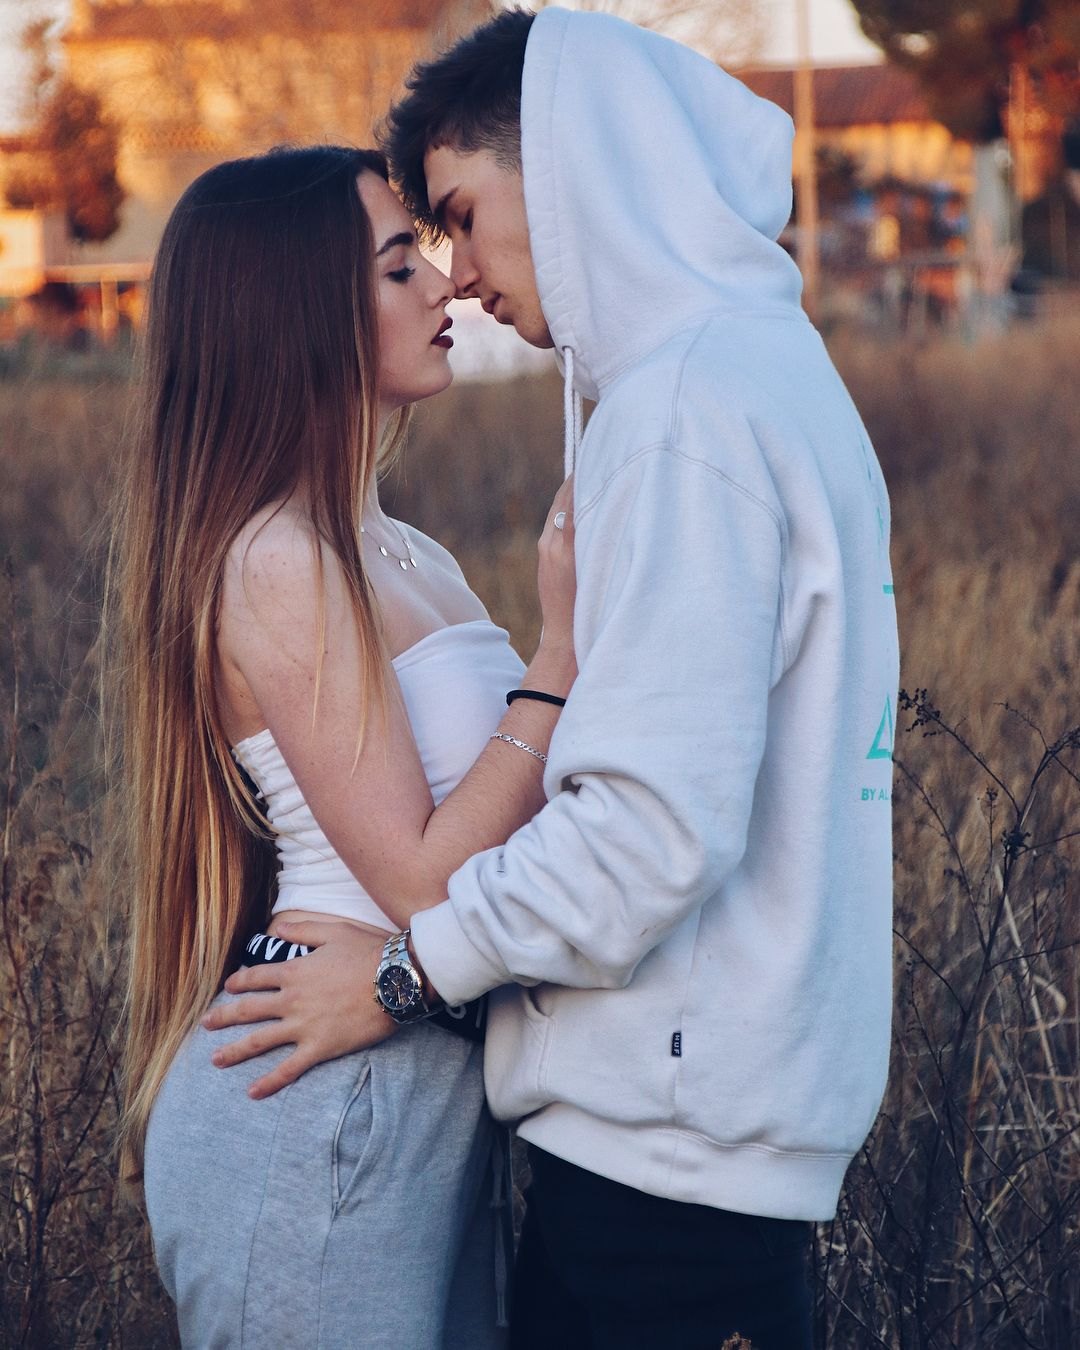 Парень с девушкой целуются фото на аву без лица